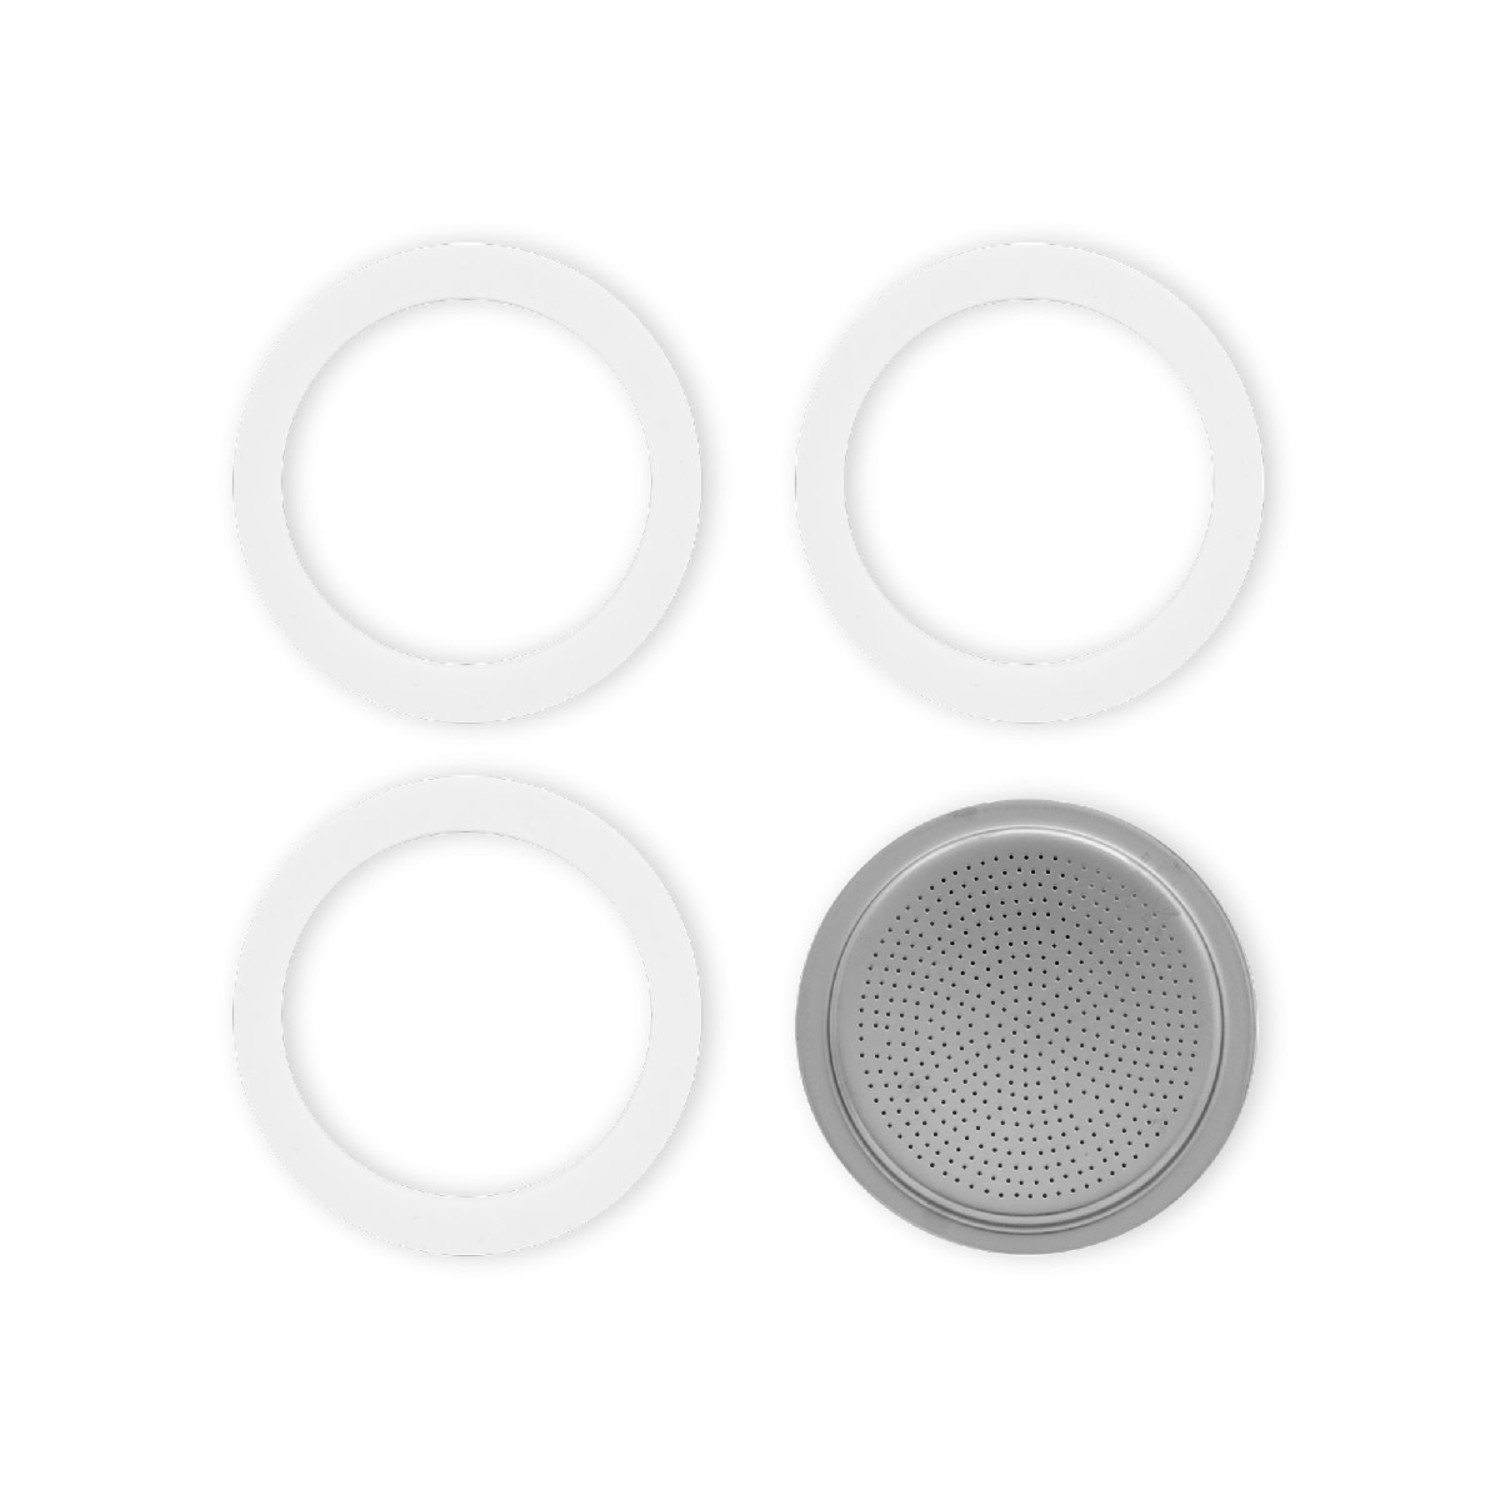 https://cdn.shoplightspeed.com/shops/633447/files/46817923/1500x4000x3/9-cup-espresso-gasket-set-of-3-filter-plate.jpg